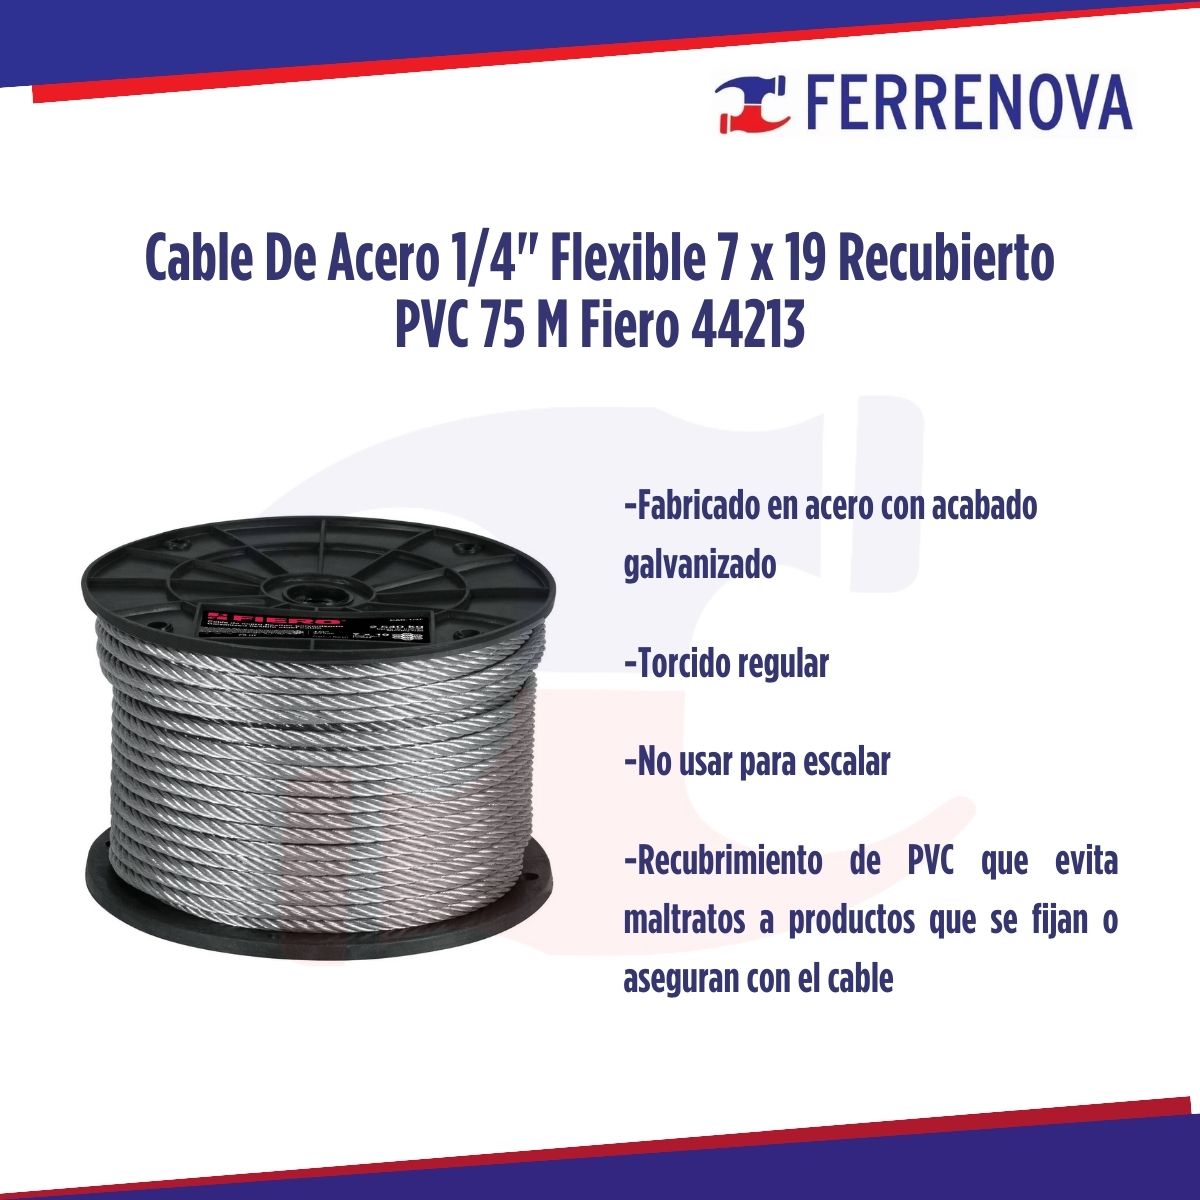 Cable De Acero 1/4" Flexible 7x19 Recubierto PVC 75 M Fiero 44213